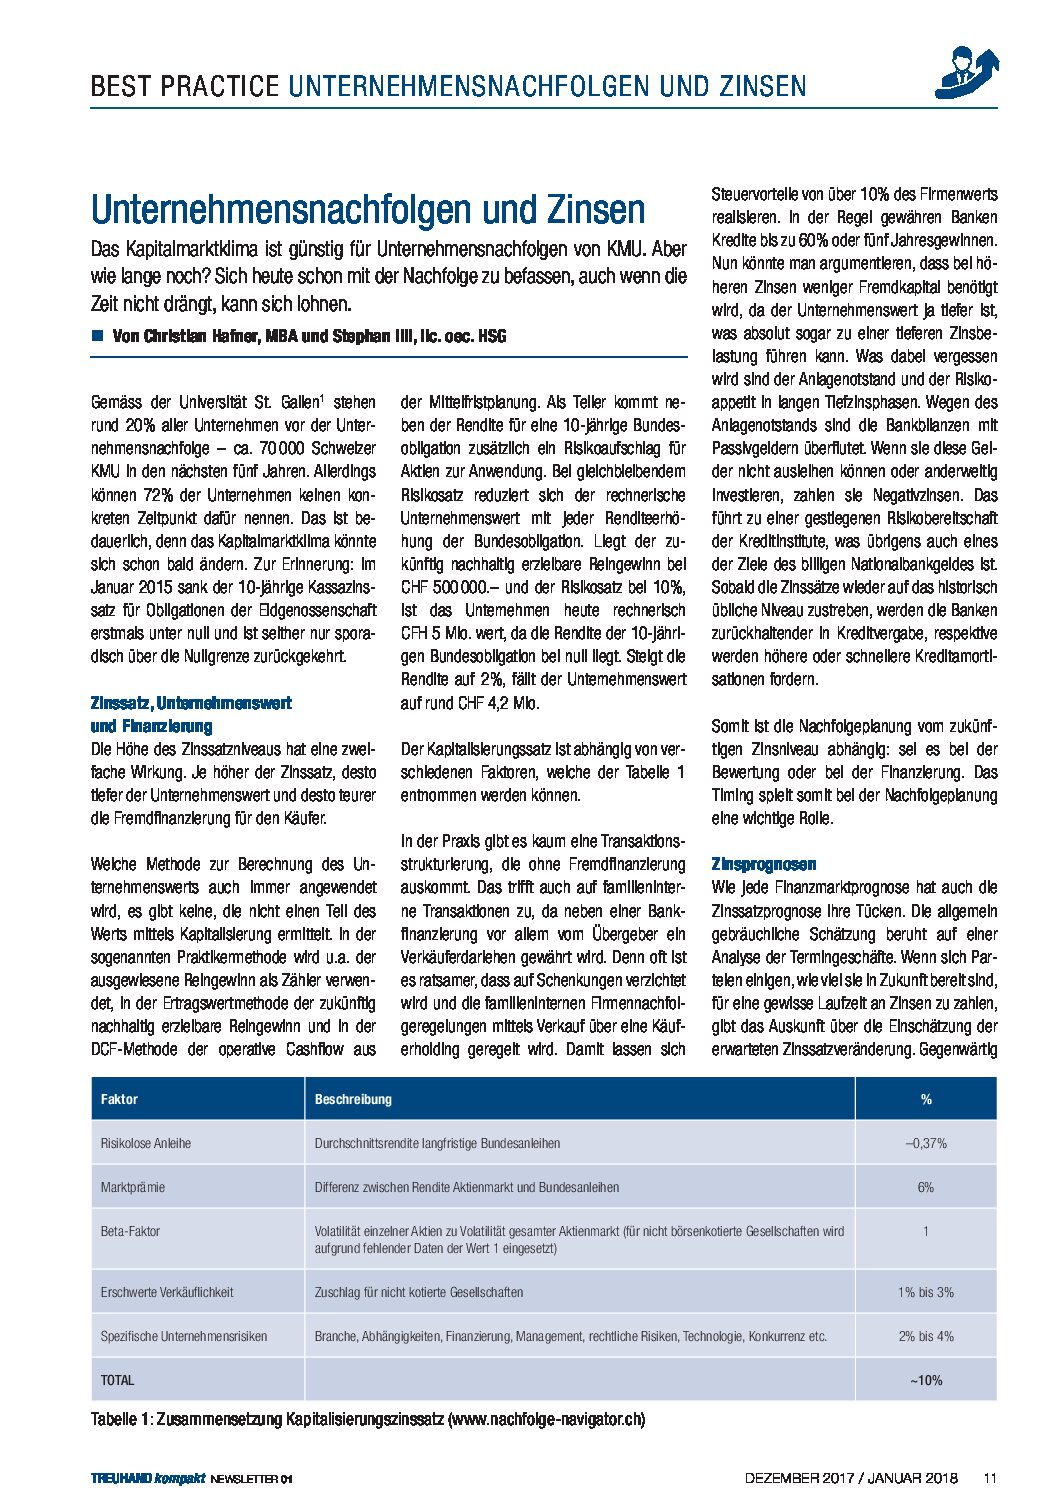 Unternehmensnachfolgen-und-Zinsen_Print-NL-Treuhand-kompakt_Ausgabe-1-2018.pdf